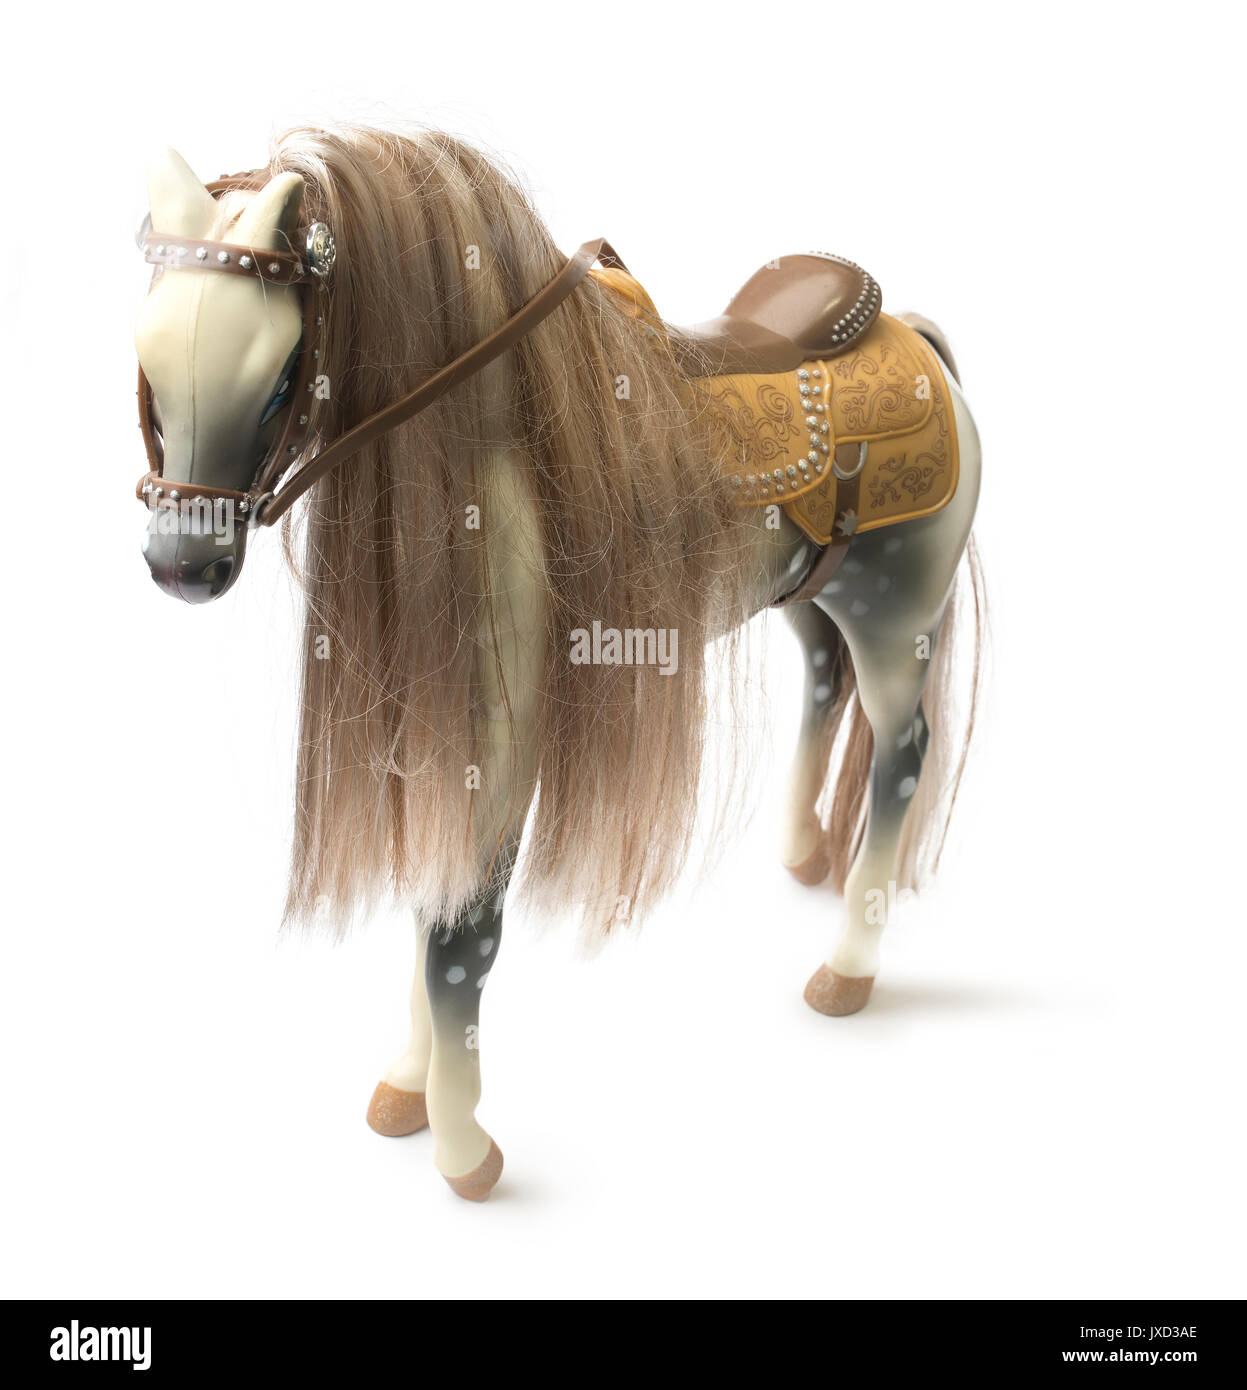 Plastik Pferd realistische toy-weißem Hintergrund Stockfotografie - Alamy